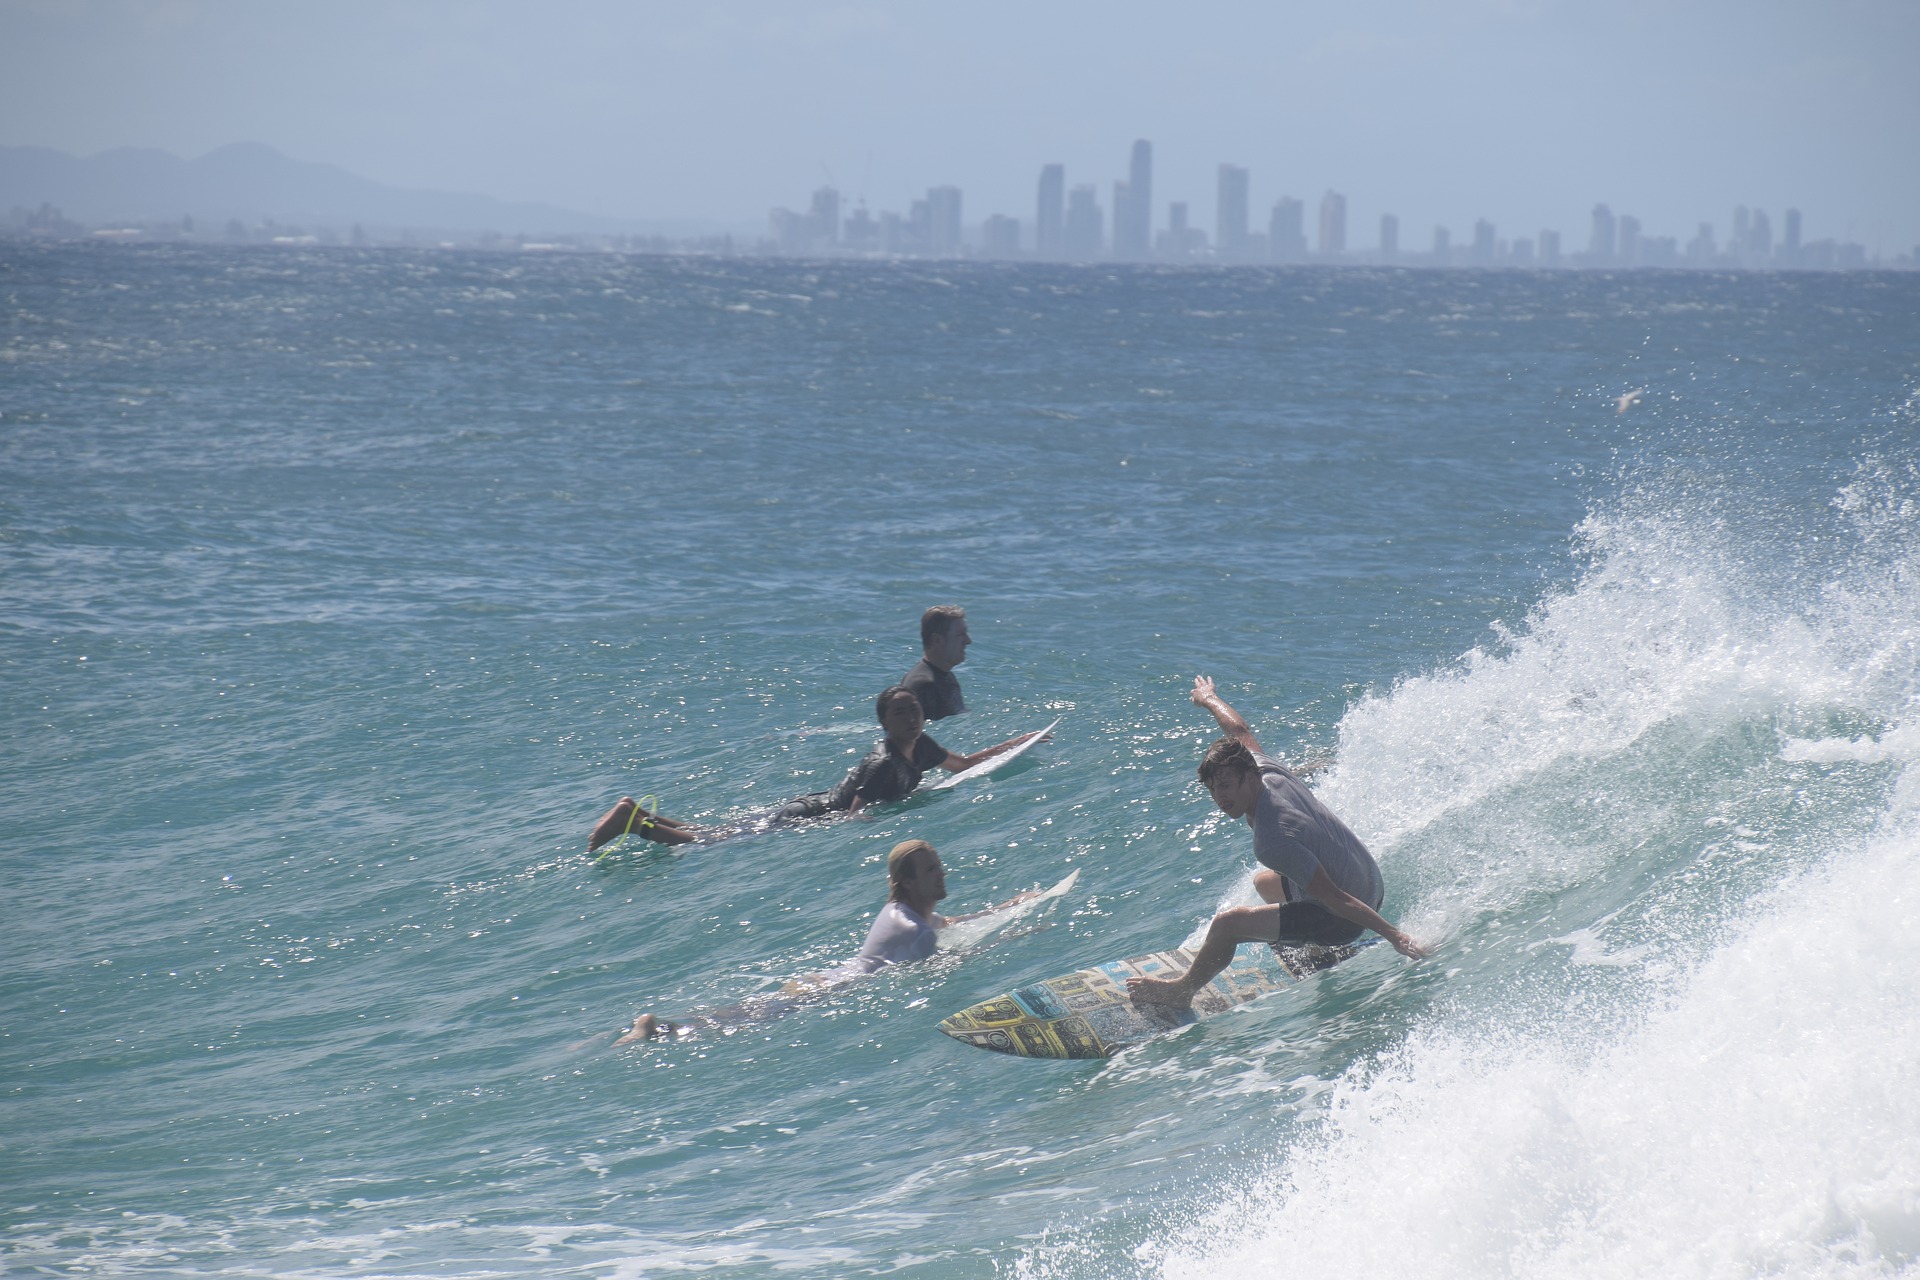 Surf's up! Source: Pixabay